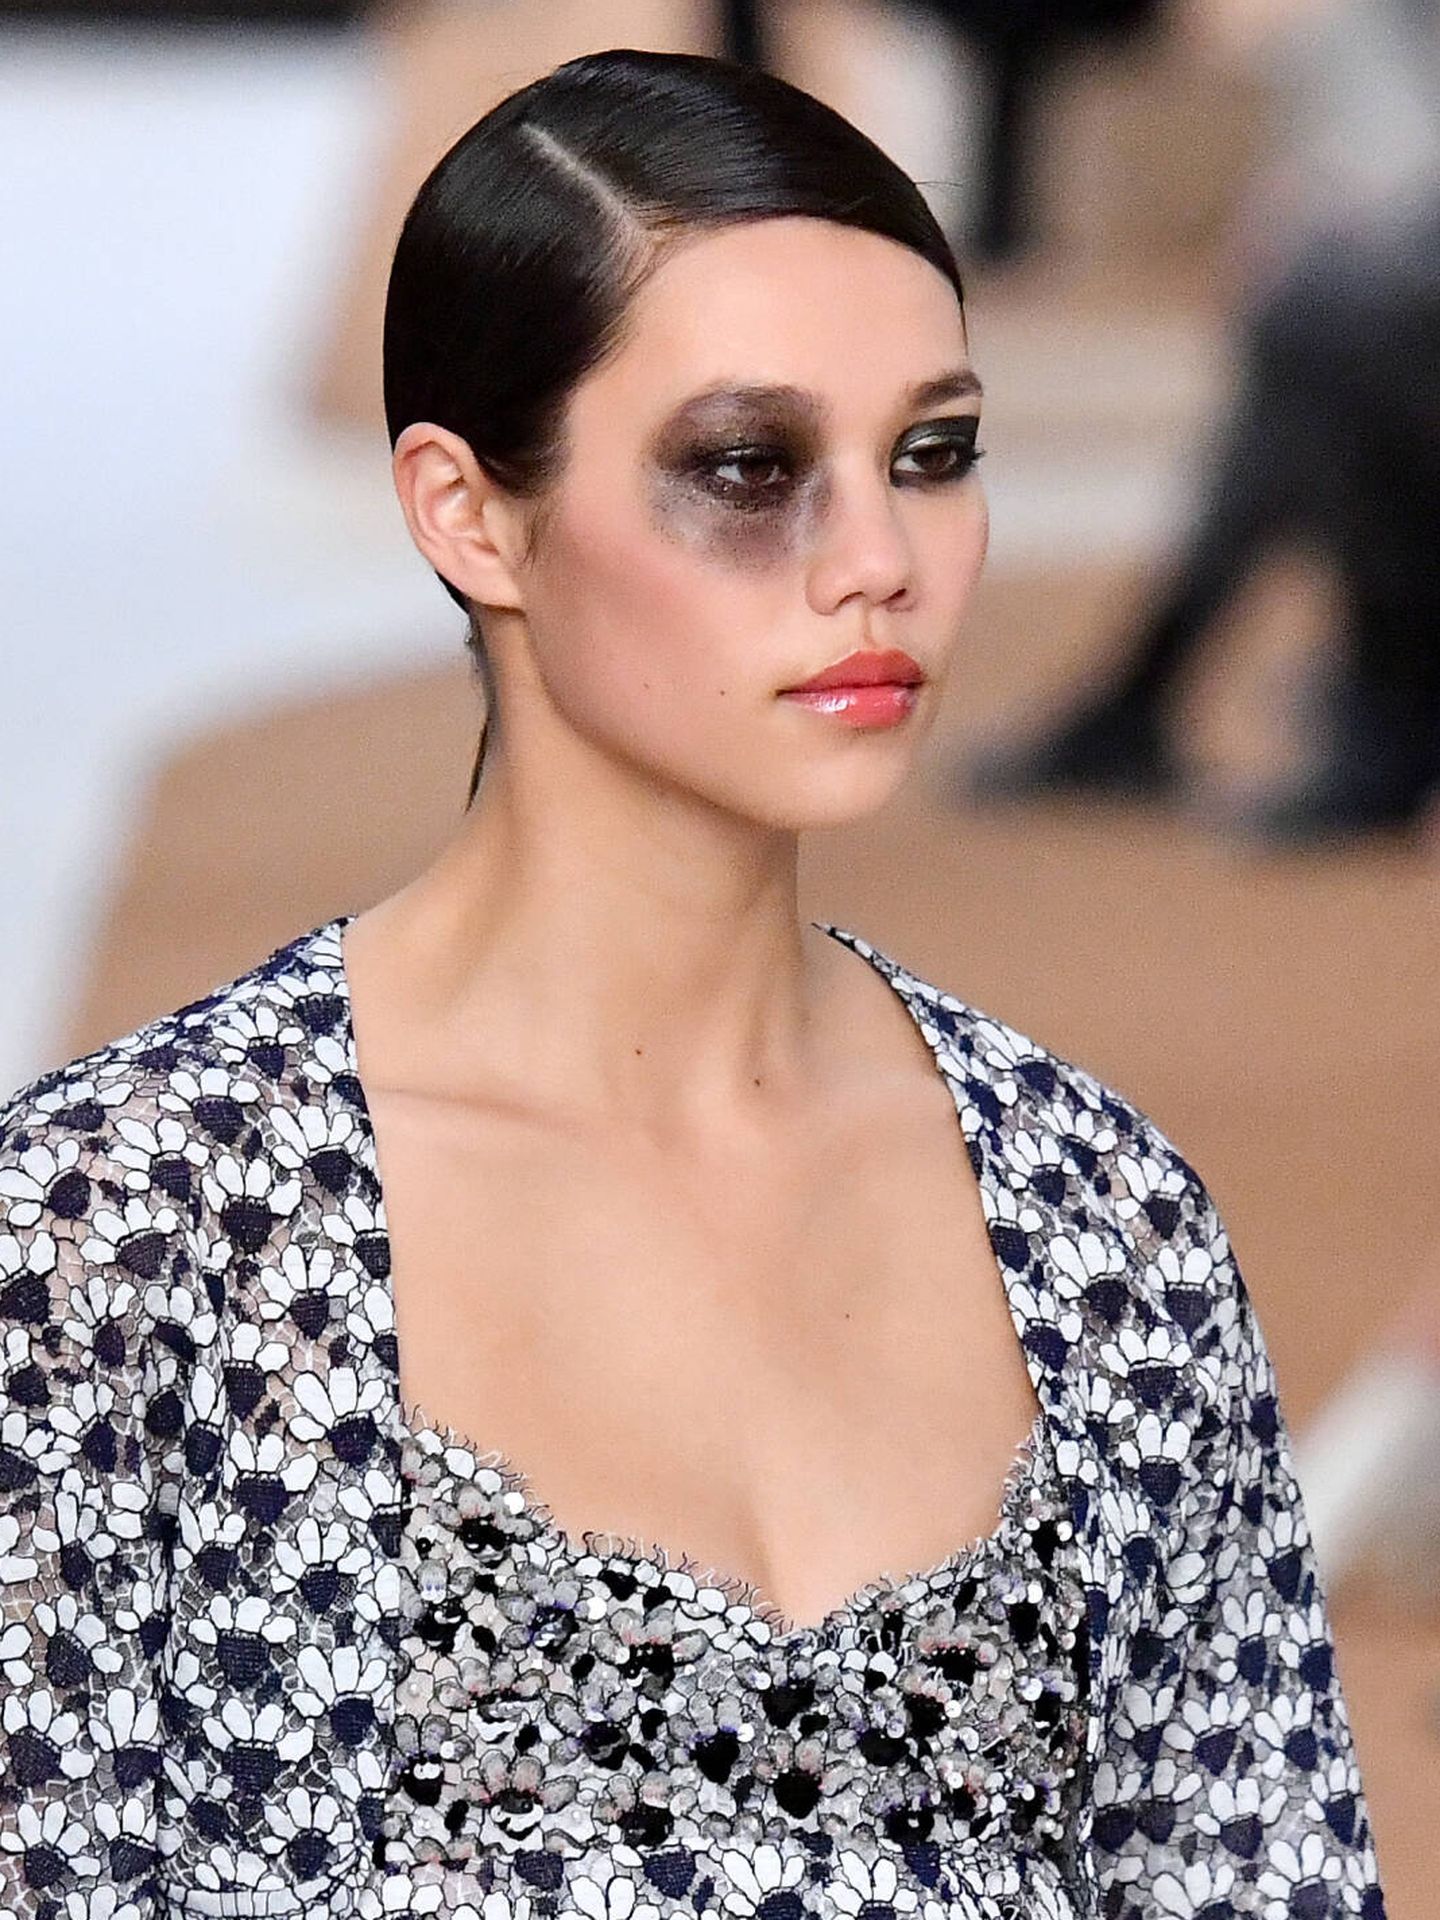 El maquillaje de eyeliner cisne y ahumado panda de Chanel. (Getty/Dominique Charriau/WireImage)